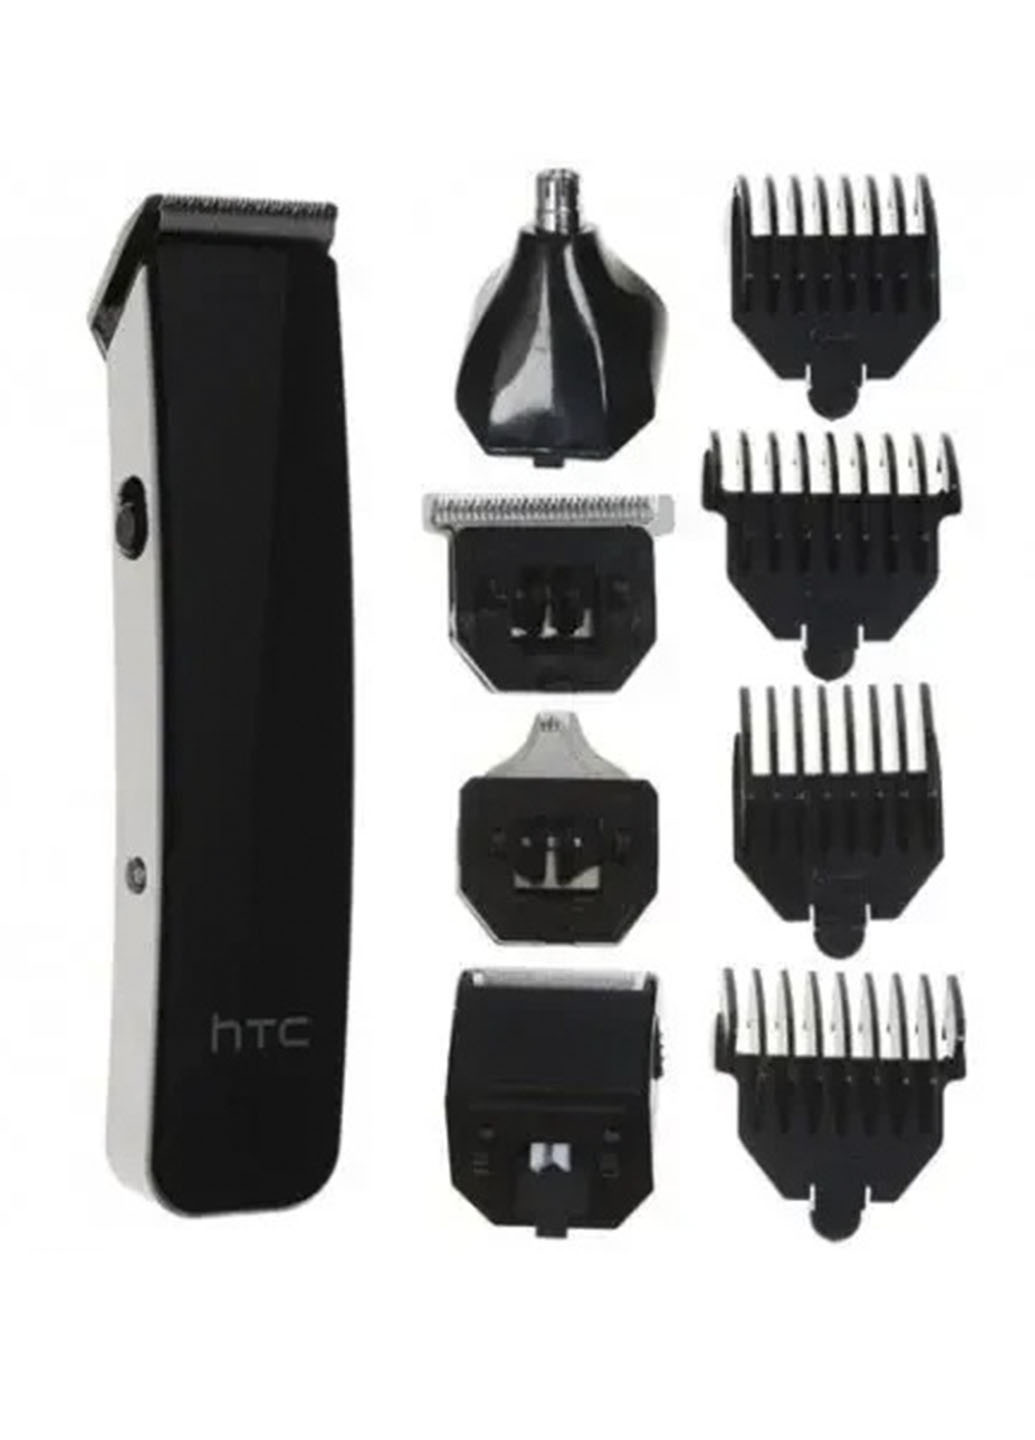 Машинка для стрижки, бритья, удаления волос из ушей и носа AT-1201 с аккумулятором и c 5-ю насадками Remax чёрные